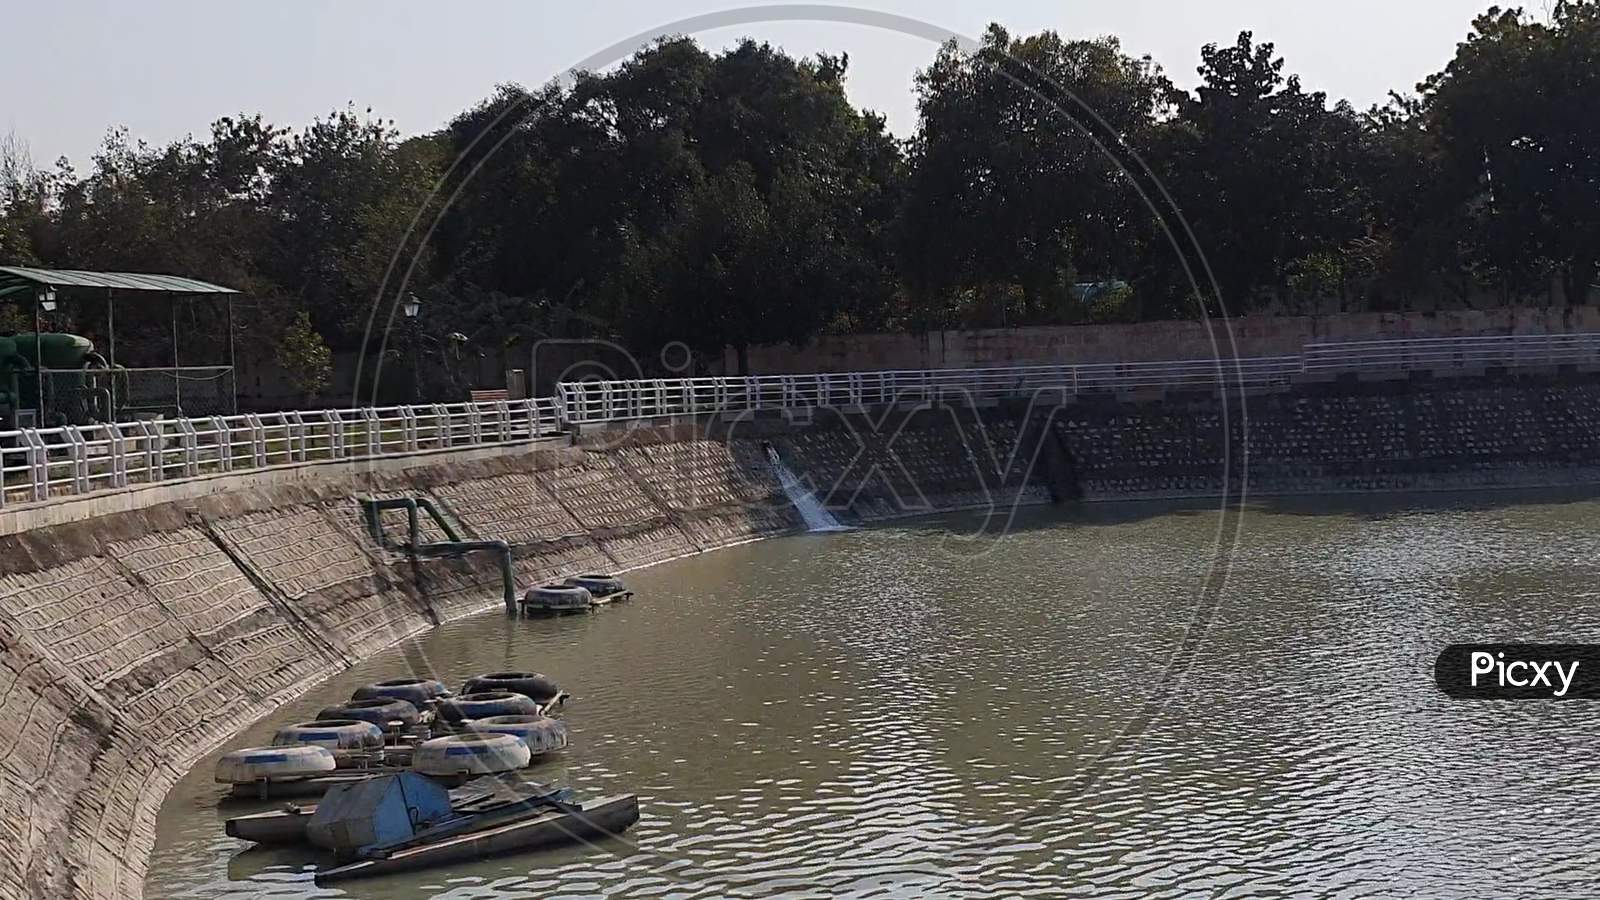 Janeshwar Mishra Park gomti nager lucknow